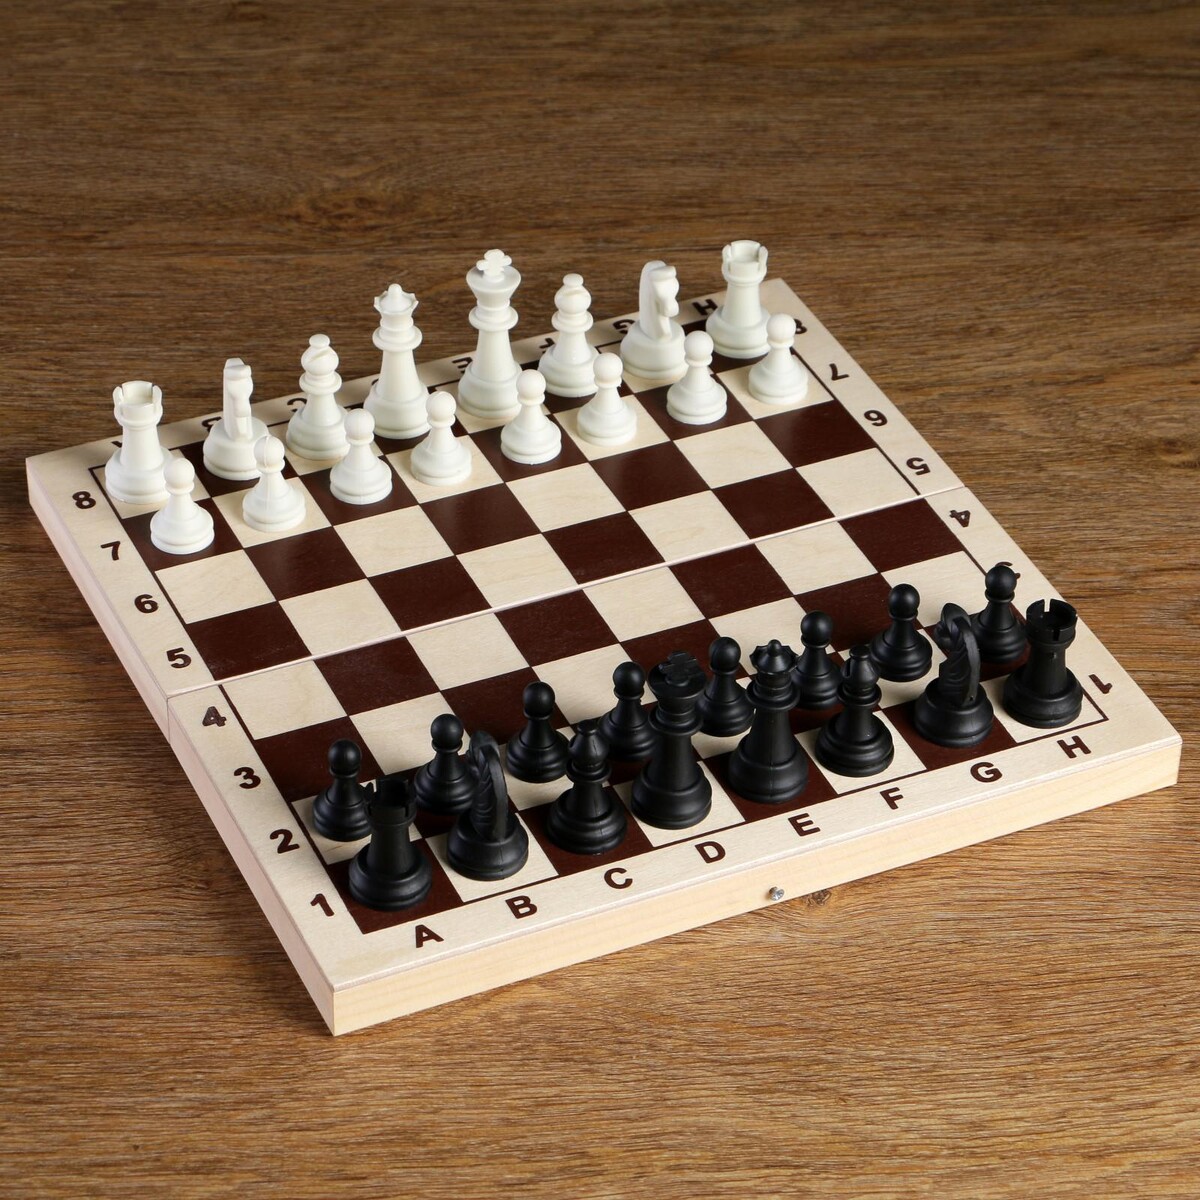 Шахматные фигуры, король h-6.2 см, пешка h-3.2 см, черно-белые голый король